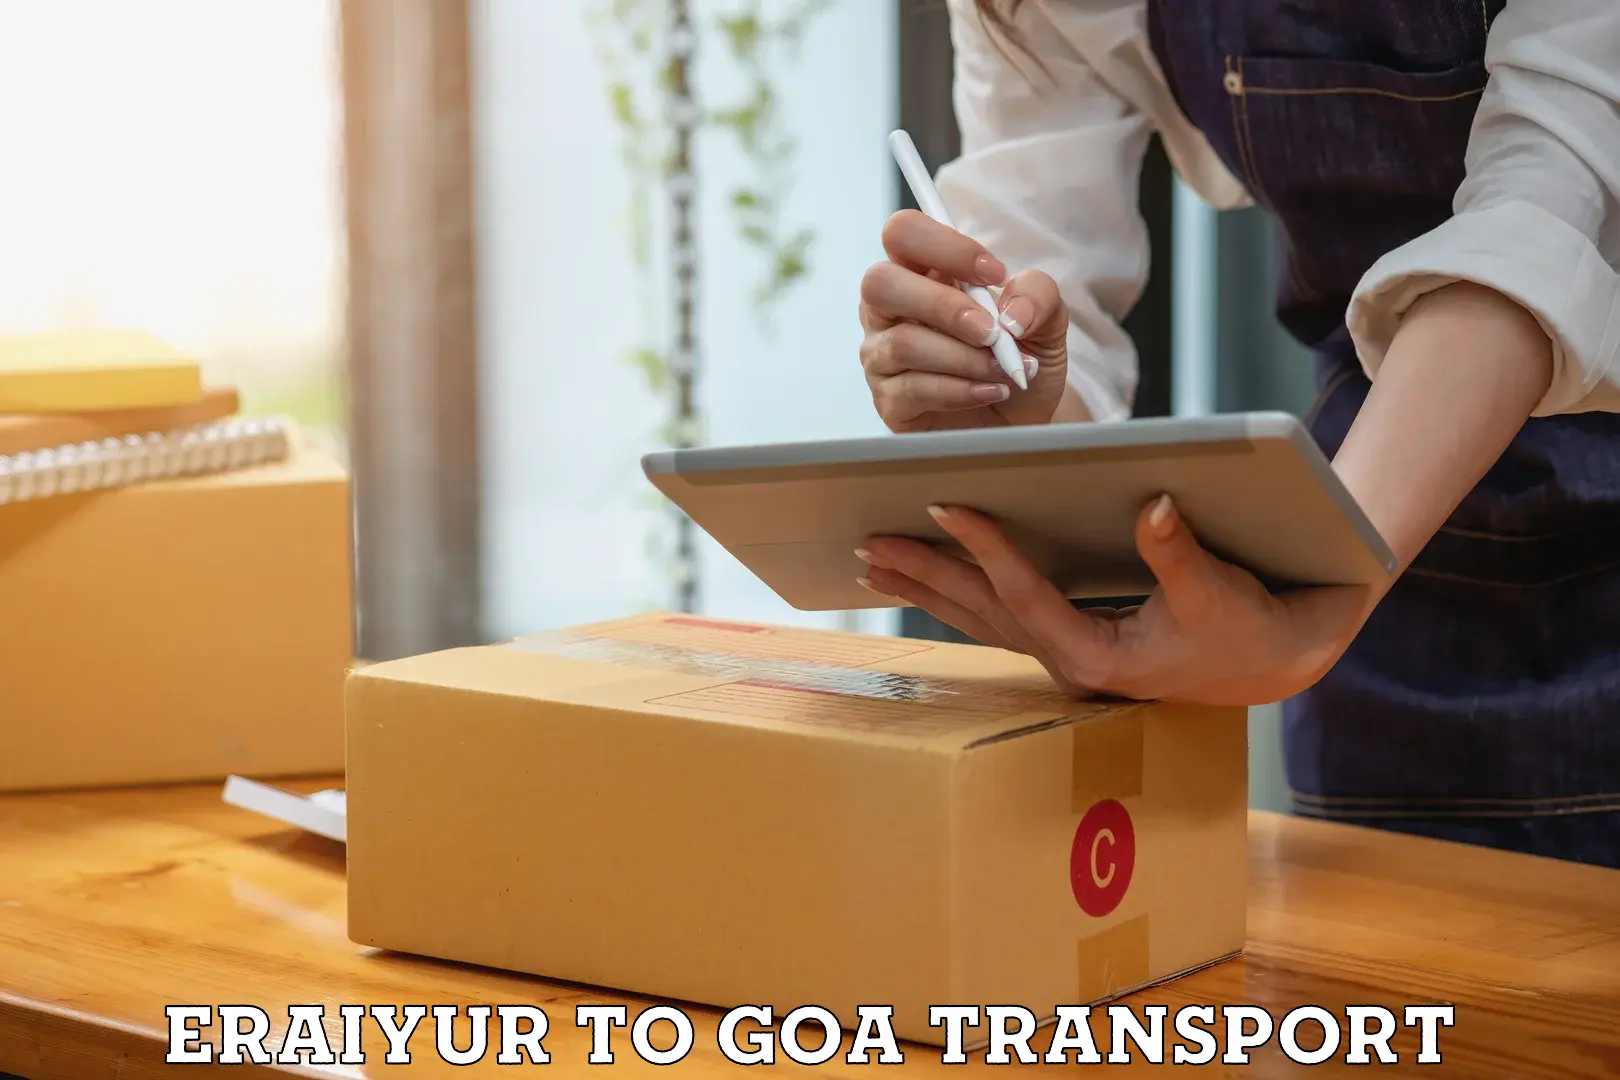 Commercial transport service Eraiyur to Vasco da Gama